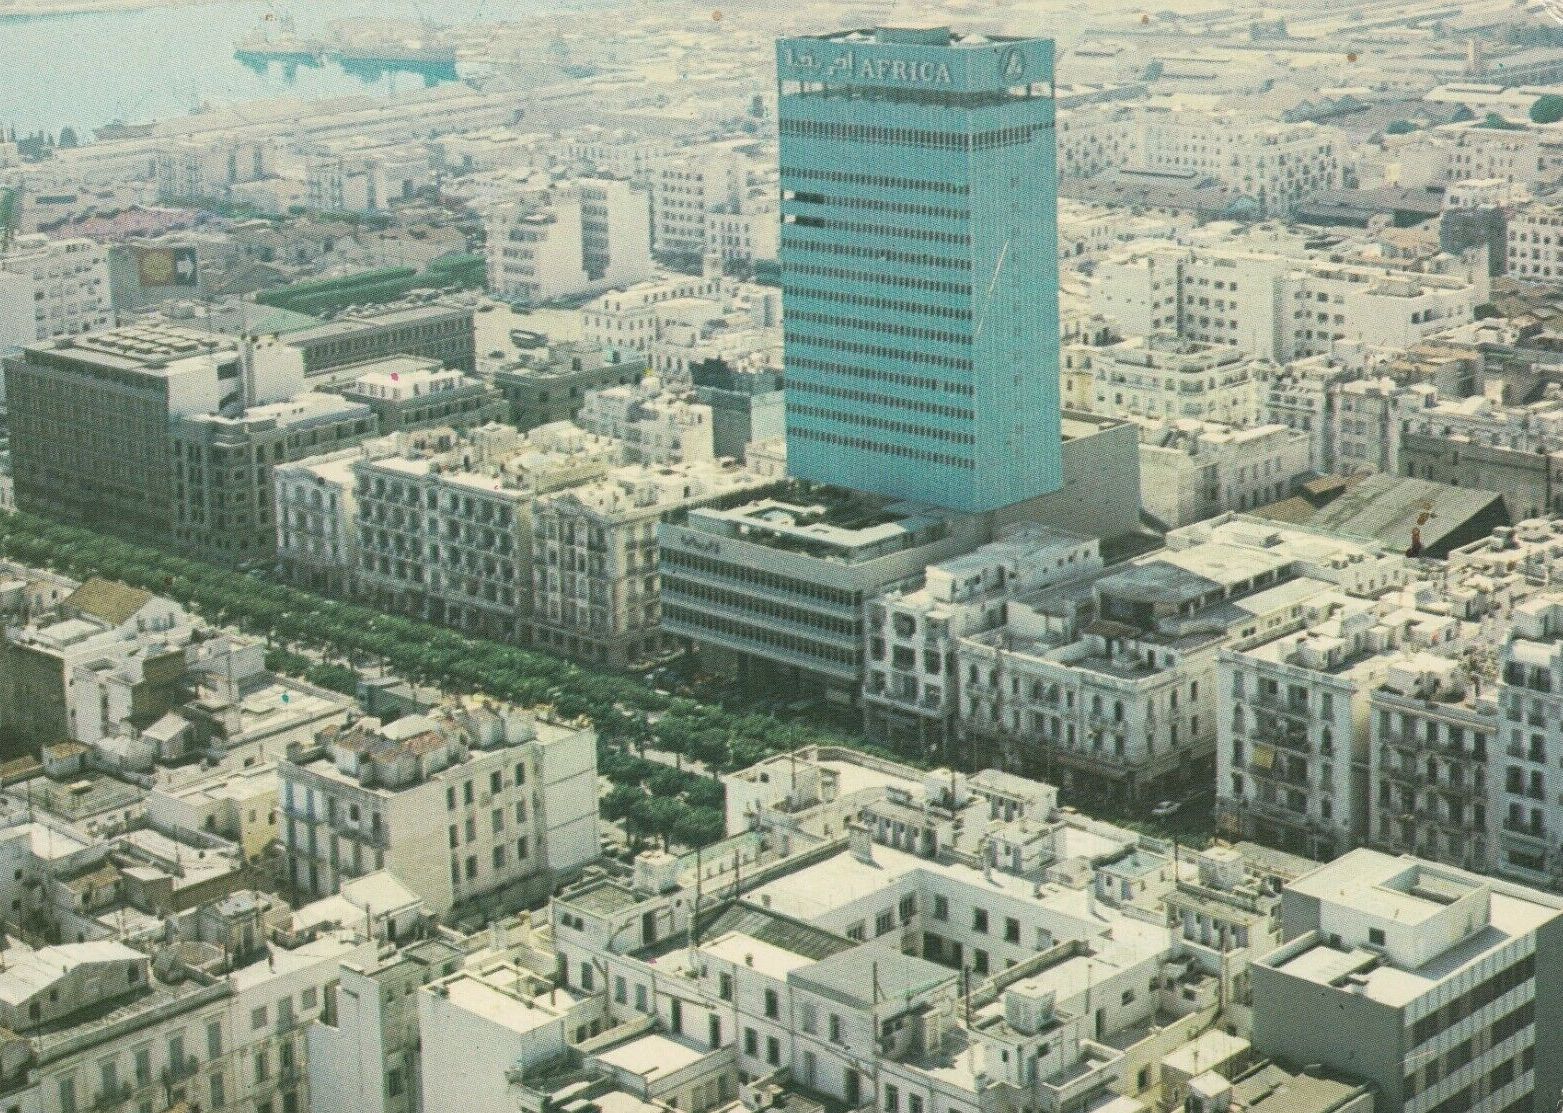 Tunis moderne, hôtel Africa, Olivier-Clément Cacoub.